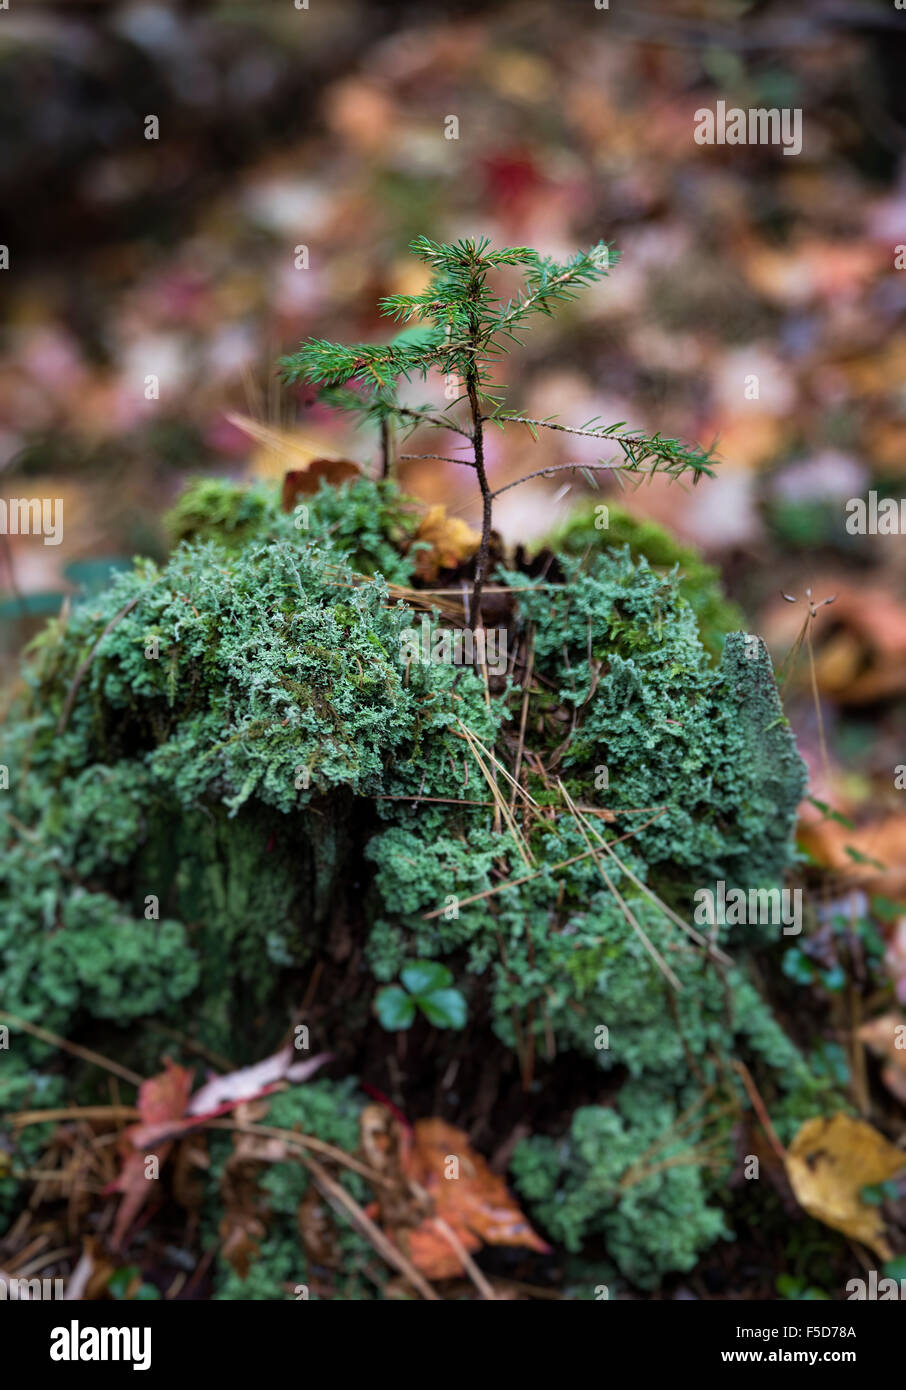 Frágil plántulas de coníferas que crecen en el tronco de un árbol podrido, New Hampshire, EE.UU. Foto de stock